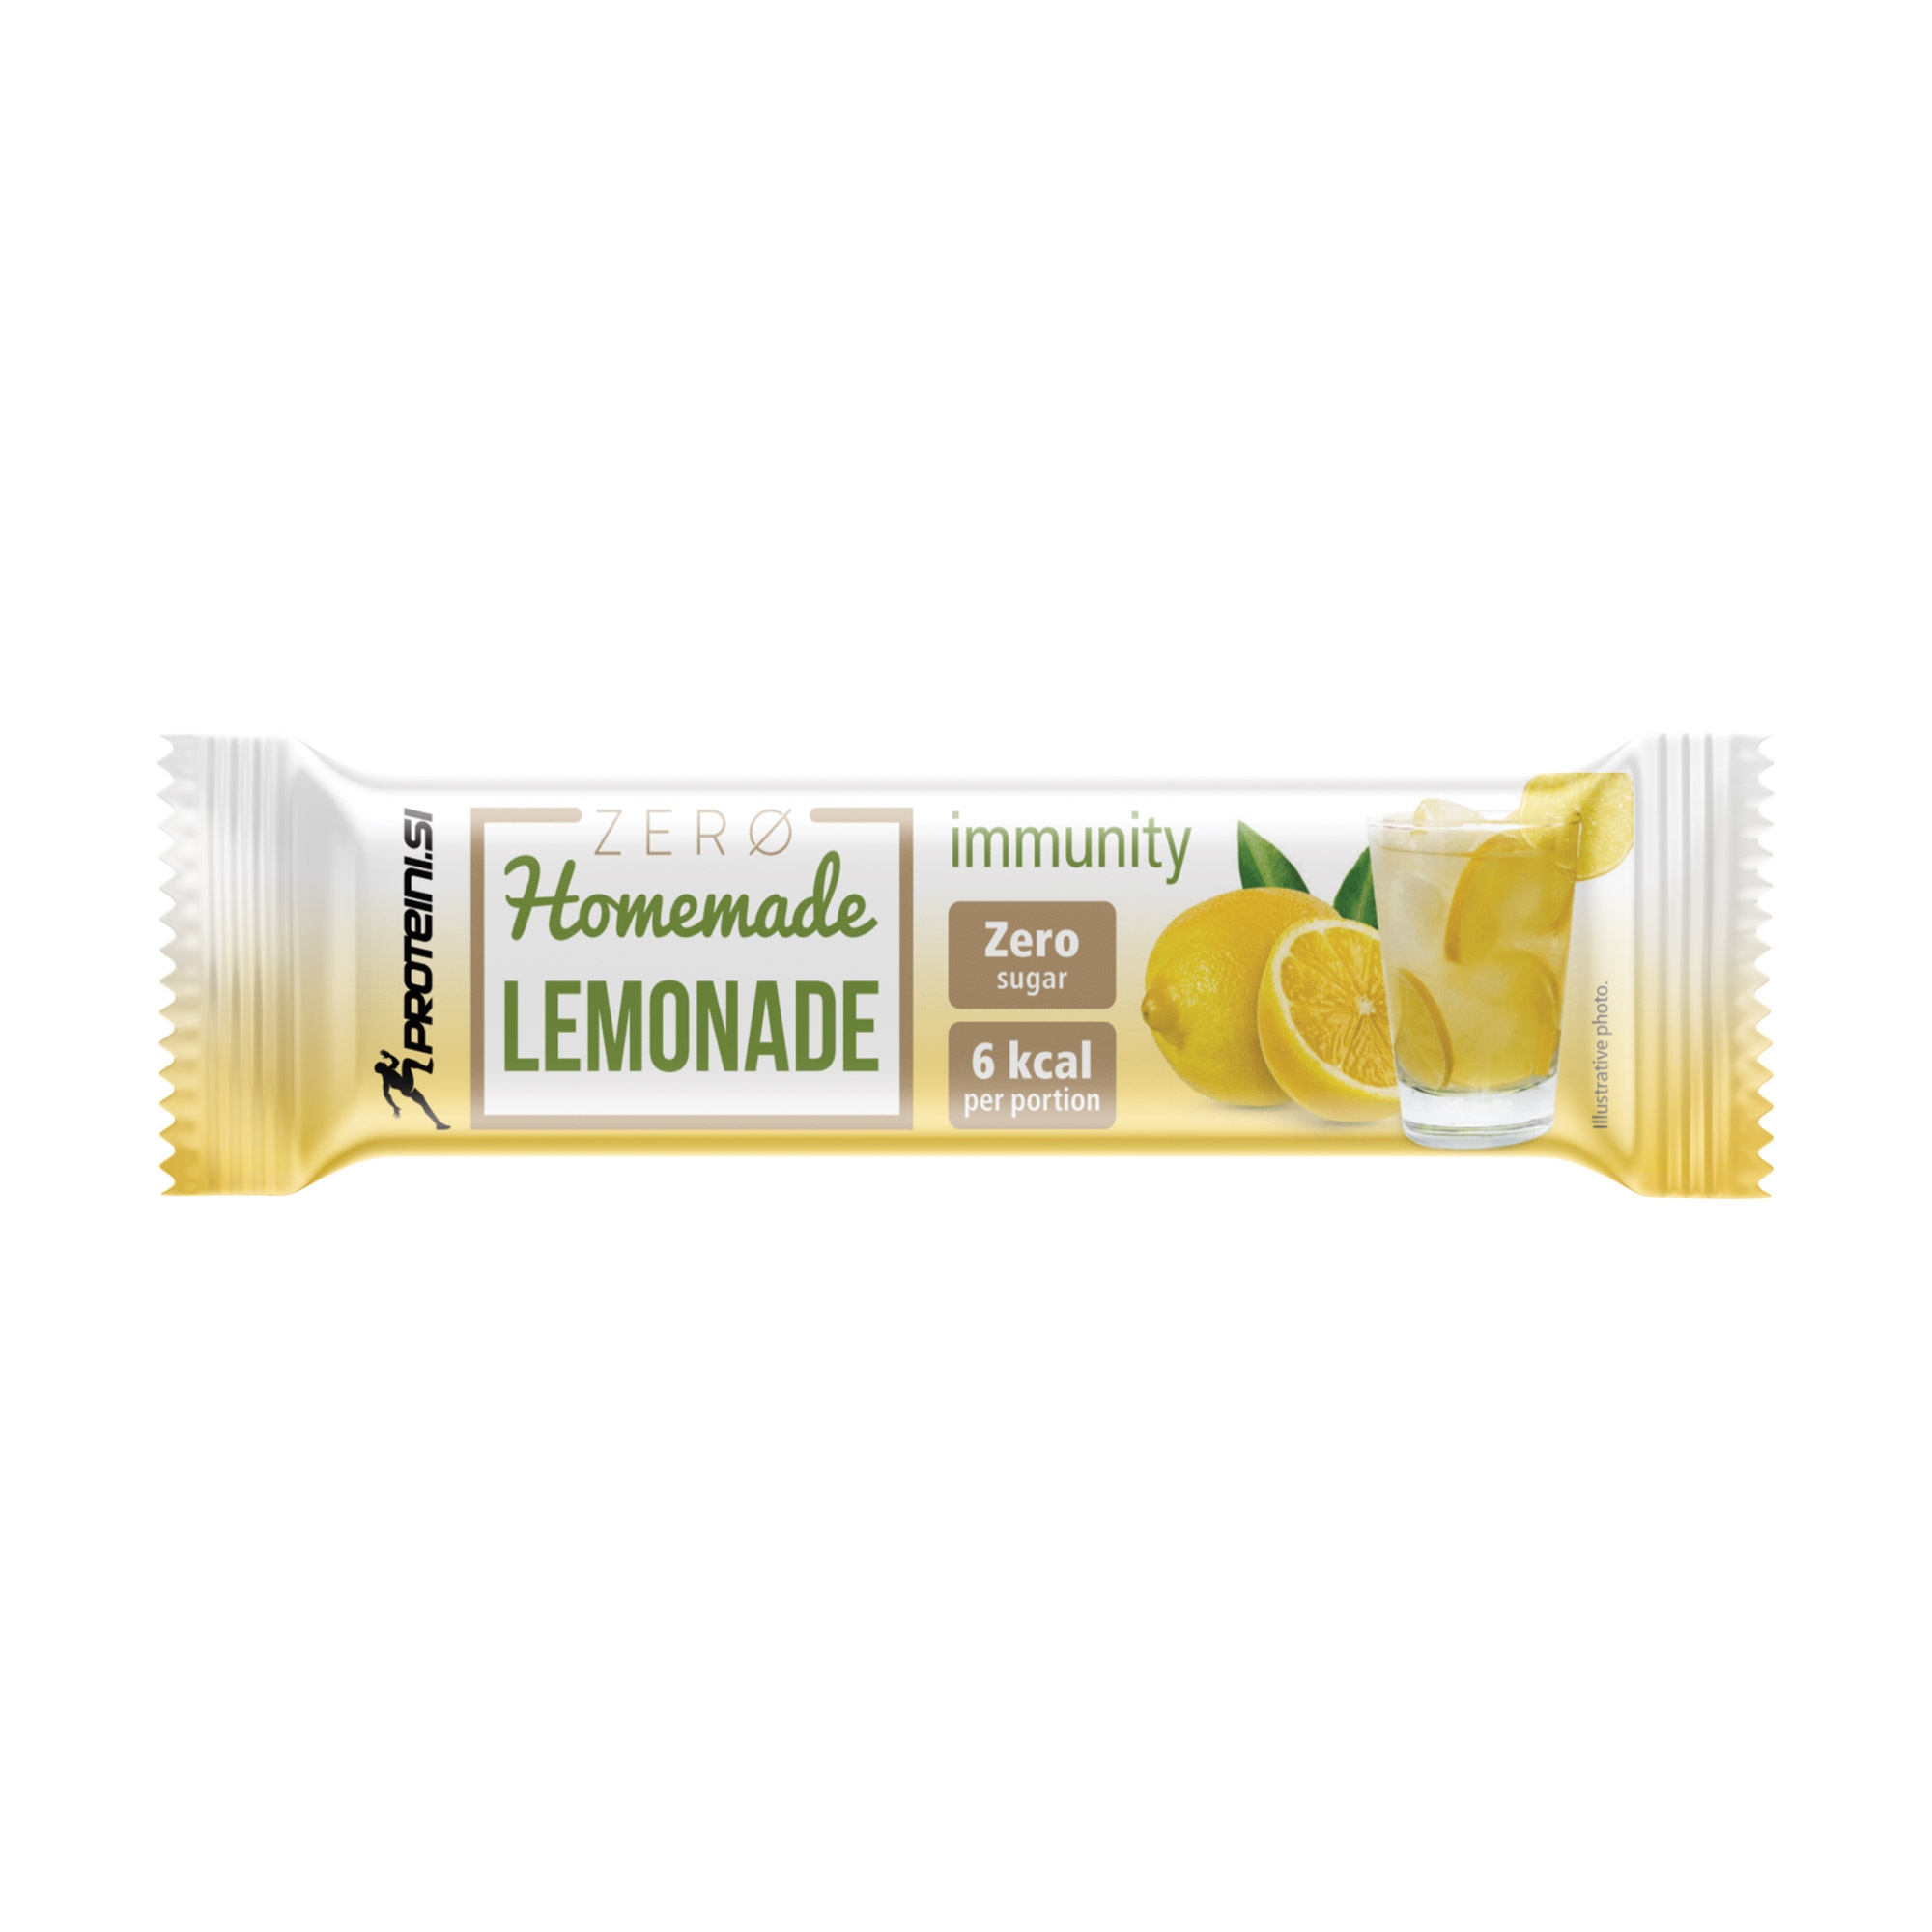 Proteini Zero Homemade Lemonade Immunity 4,2g